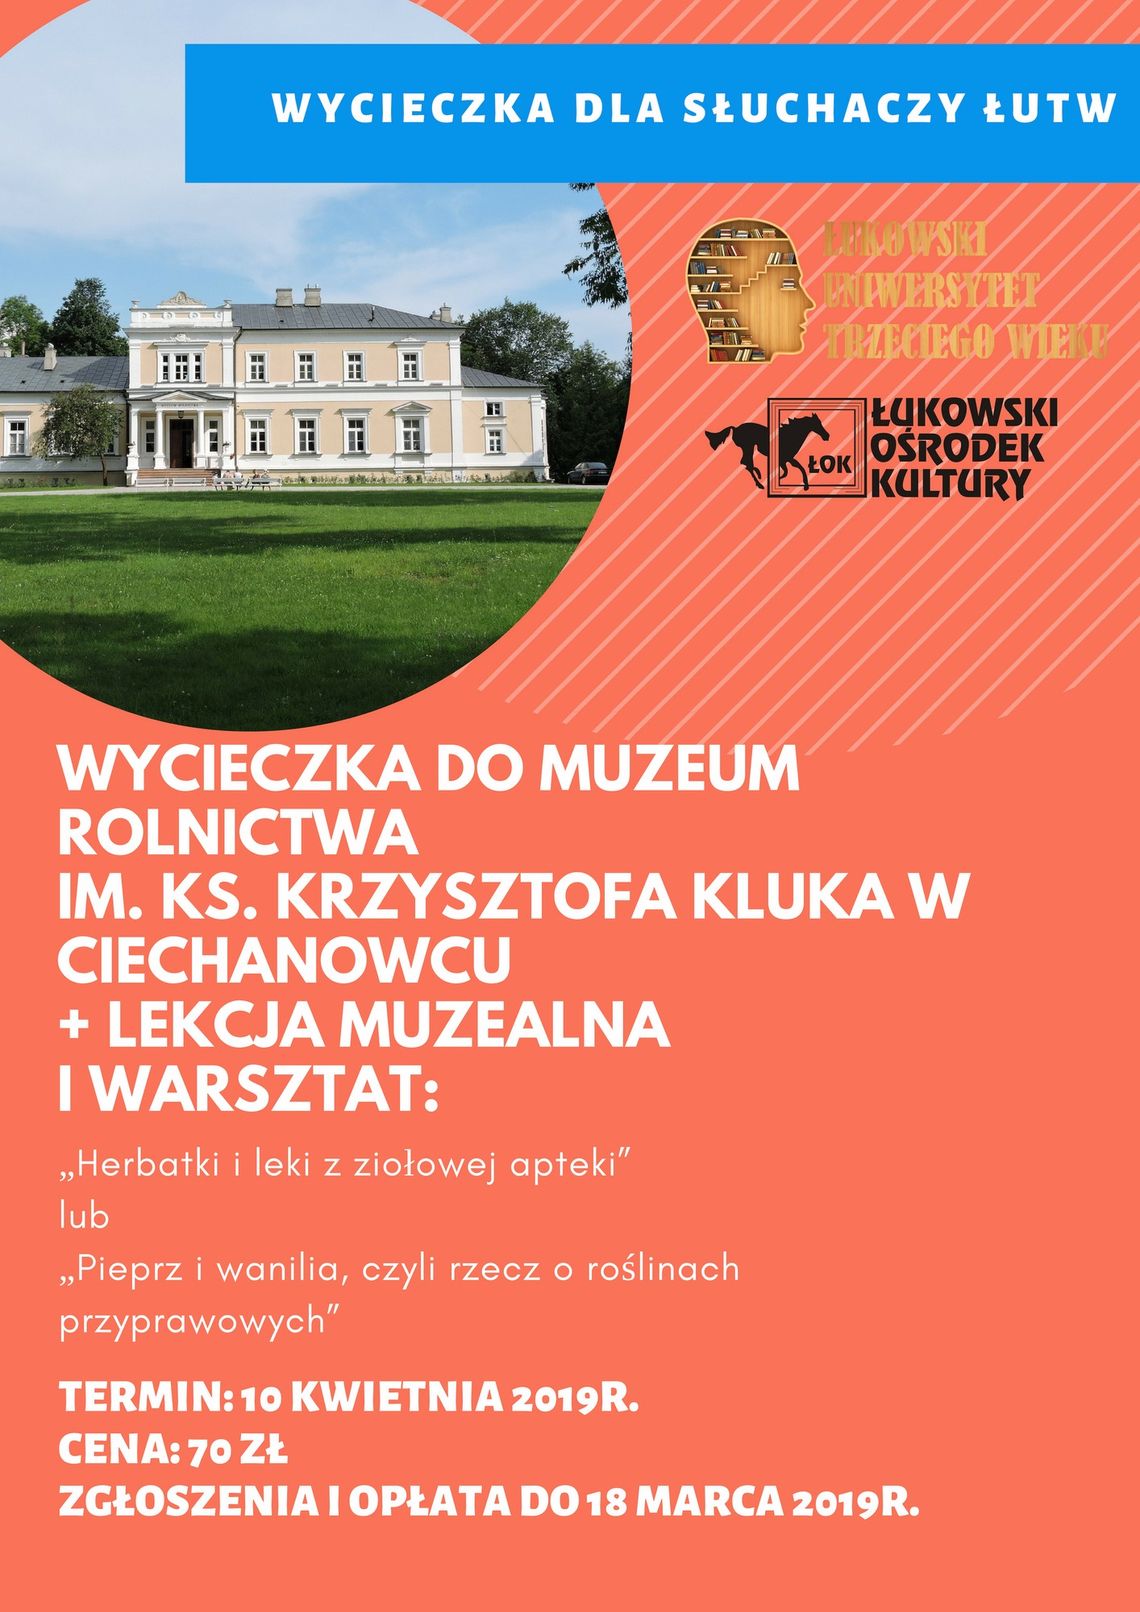 Wyjazd Łukowskiego Uniwersytetu Trzeciego Wieku do Ciechanowca /10 kwietnia 2019